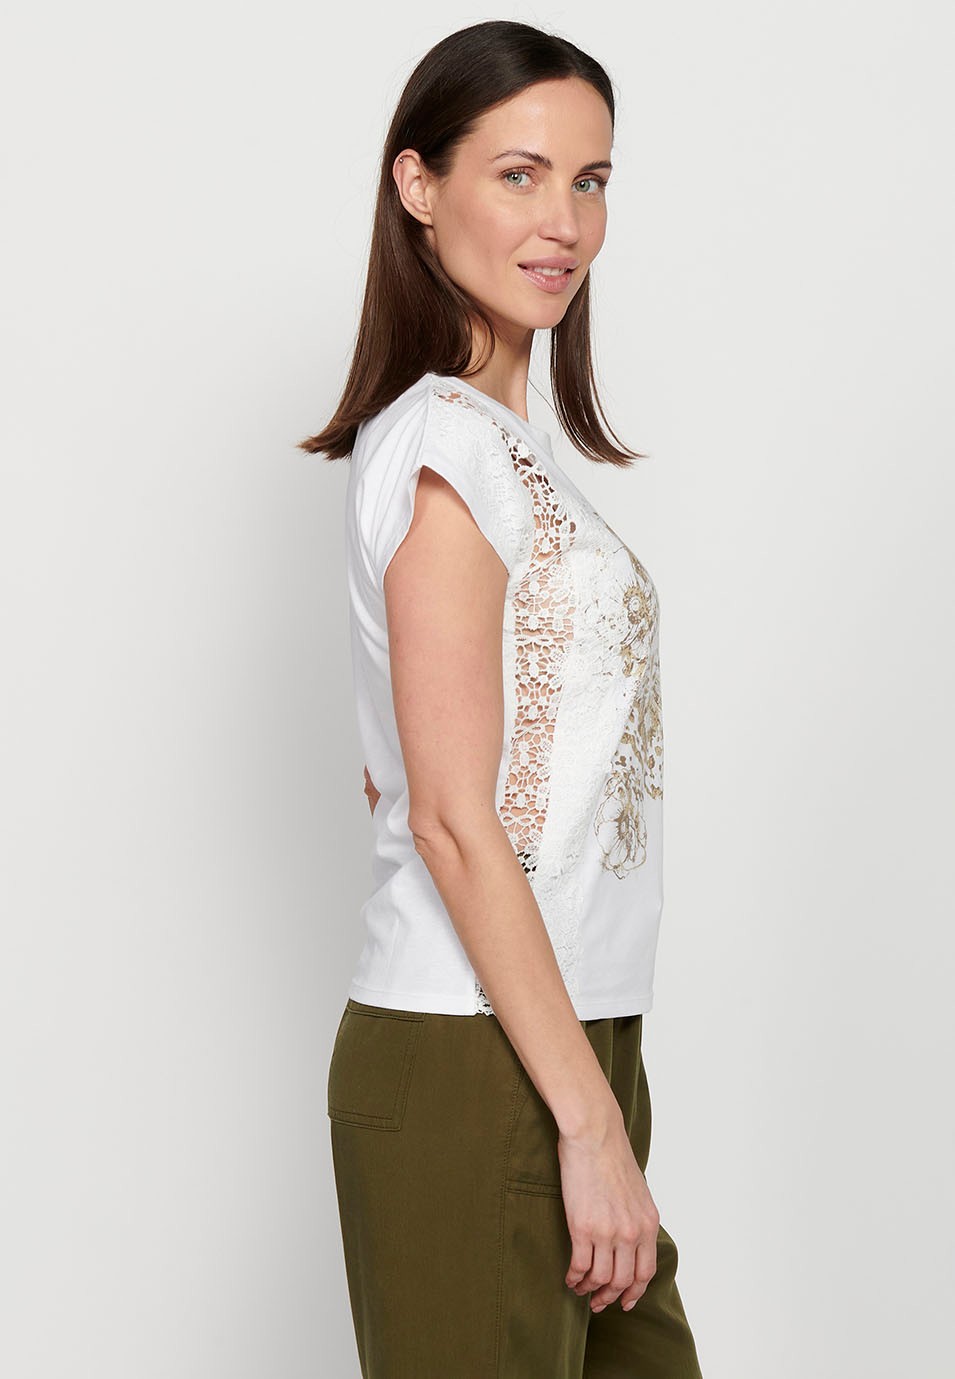 Kurzarm-T-Shirt mit Spitzendetail und Frontprint, weiße Farbe für Damen